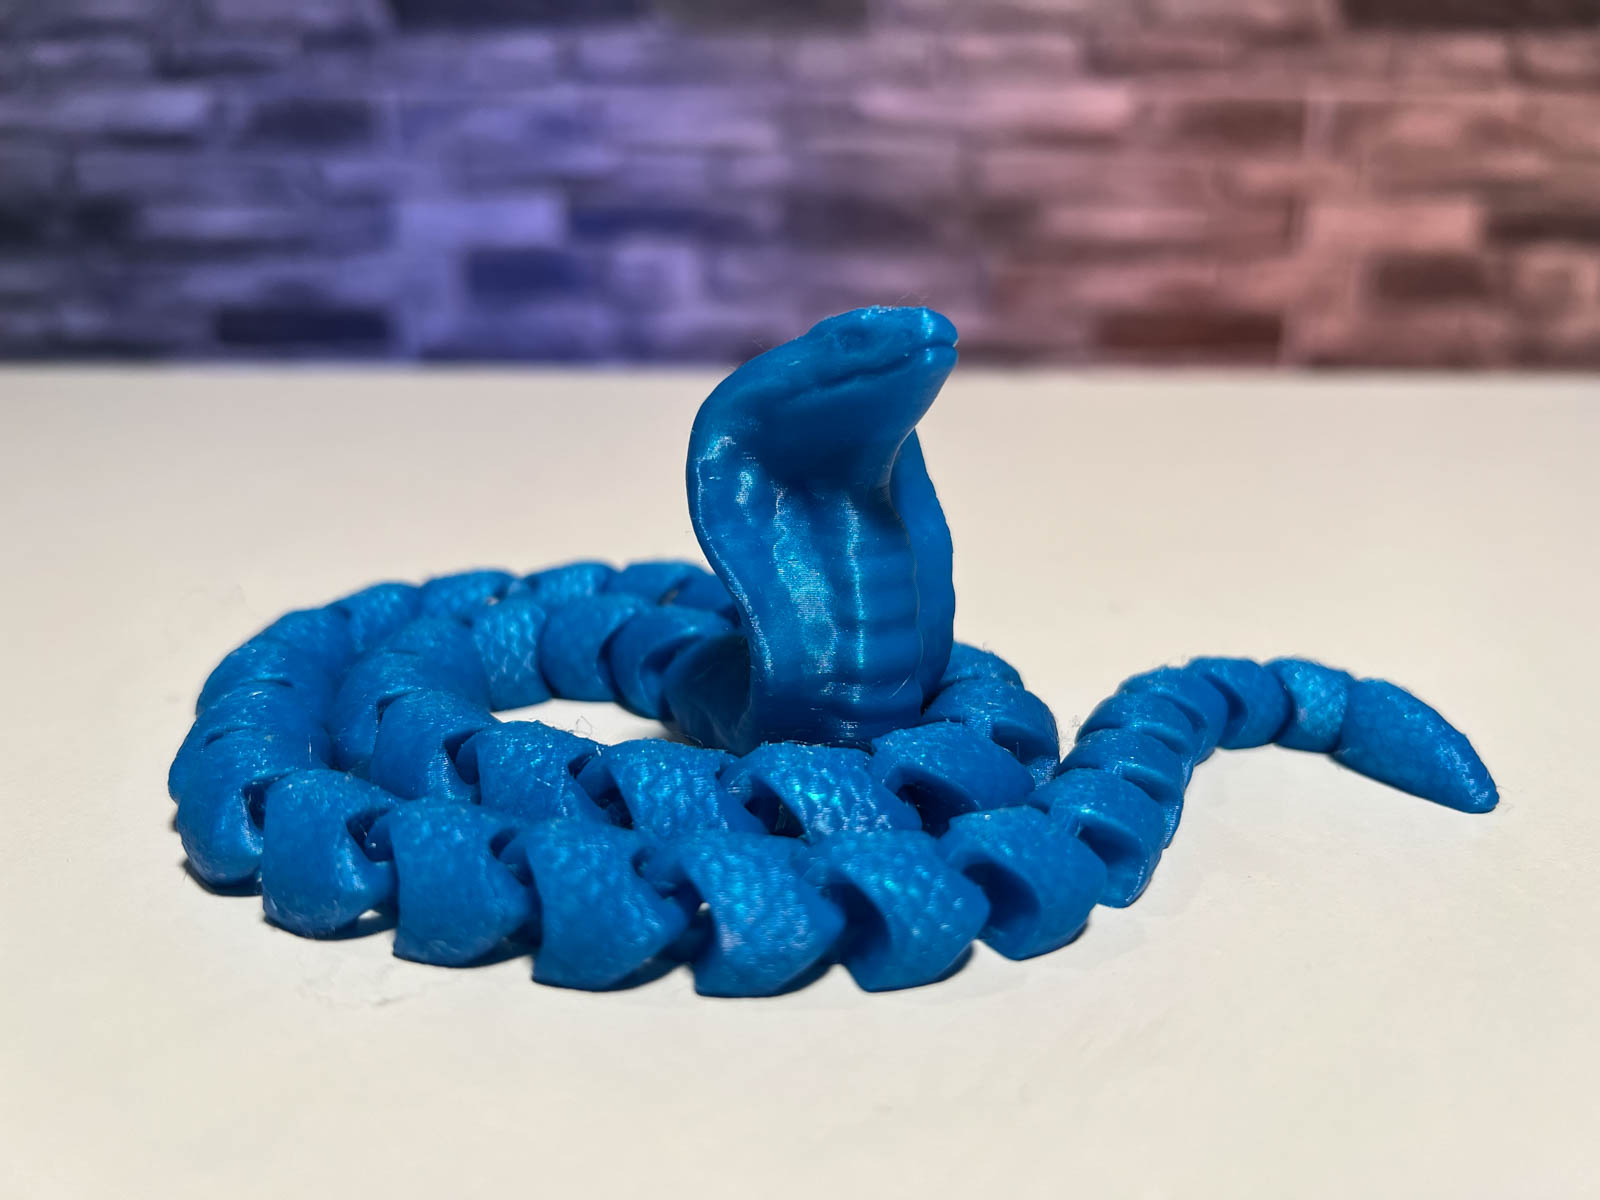 Cobra Snake | 3D Print Model